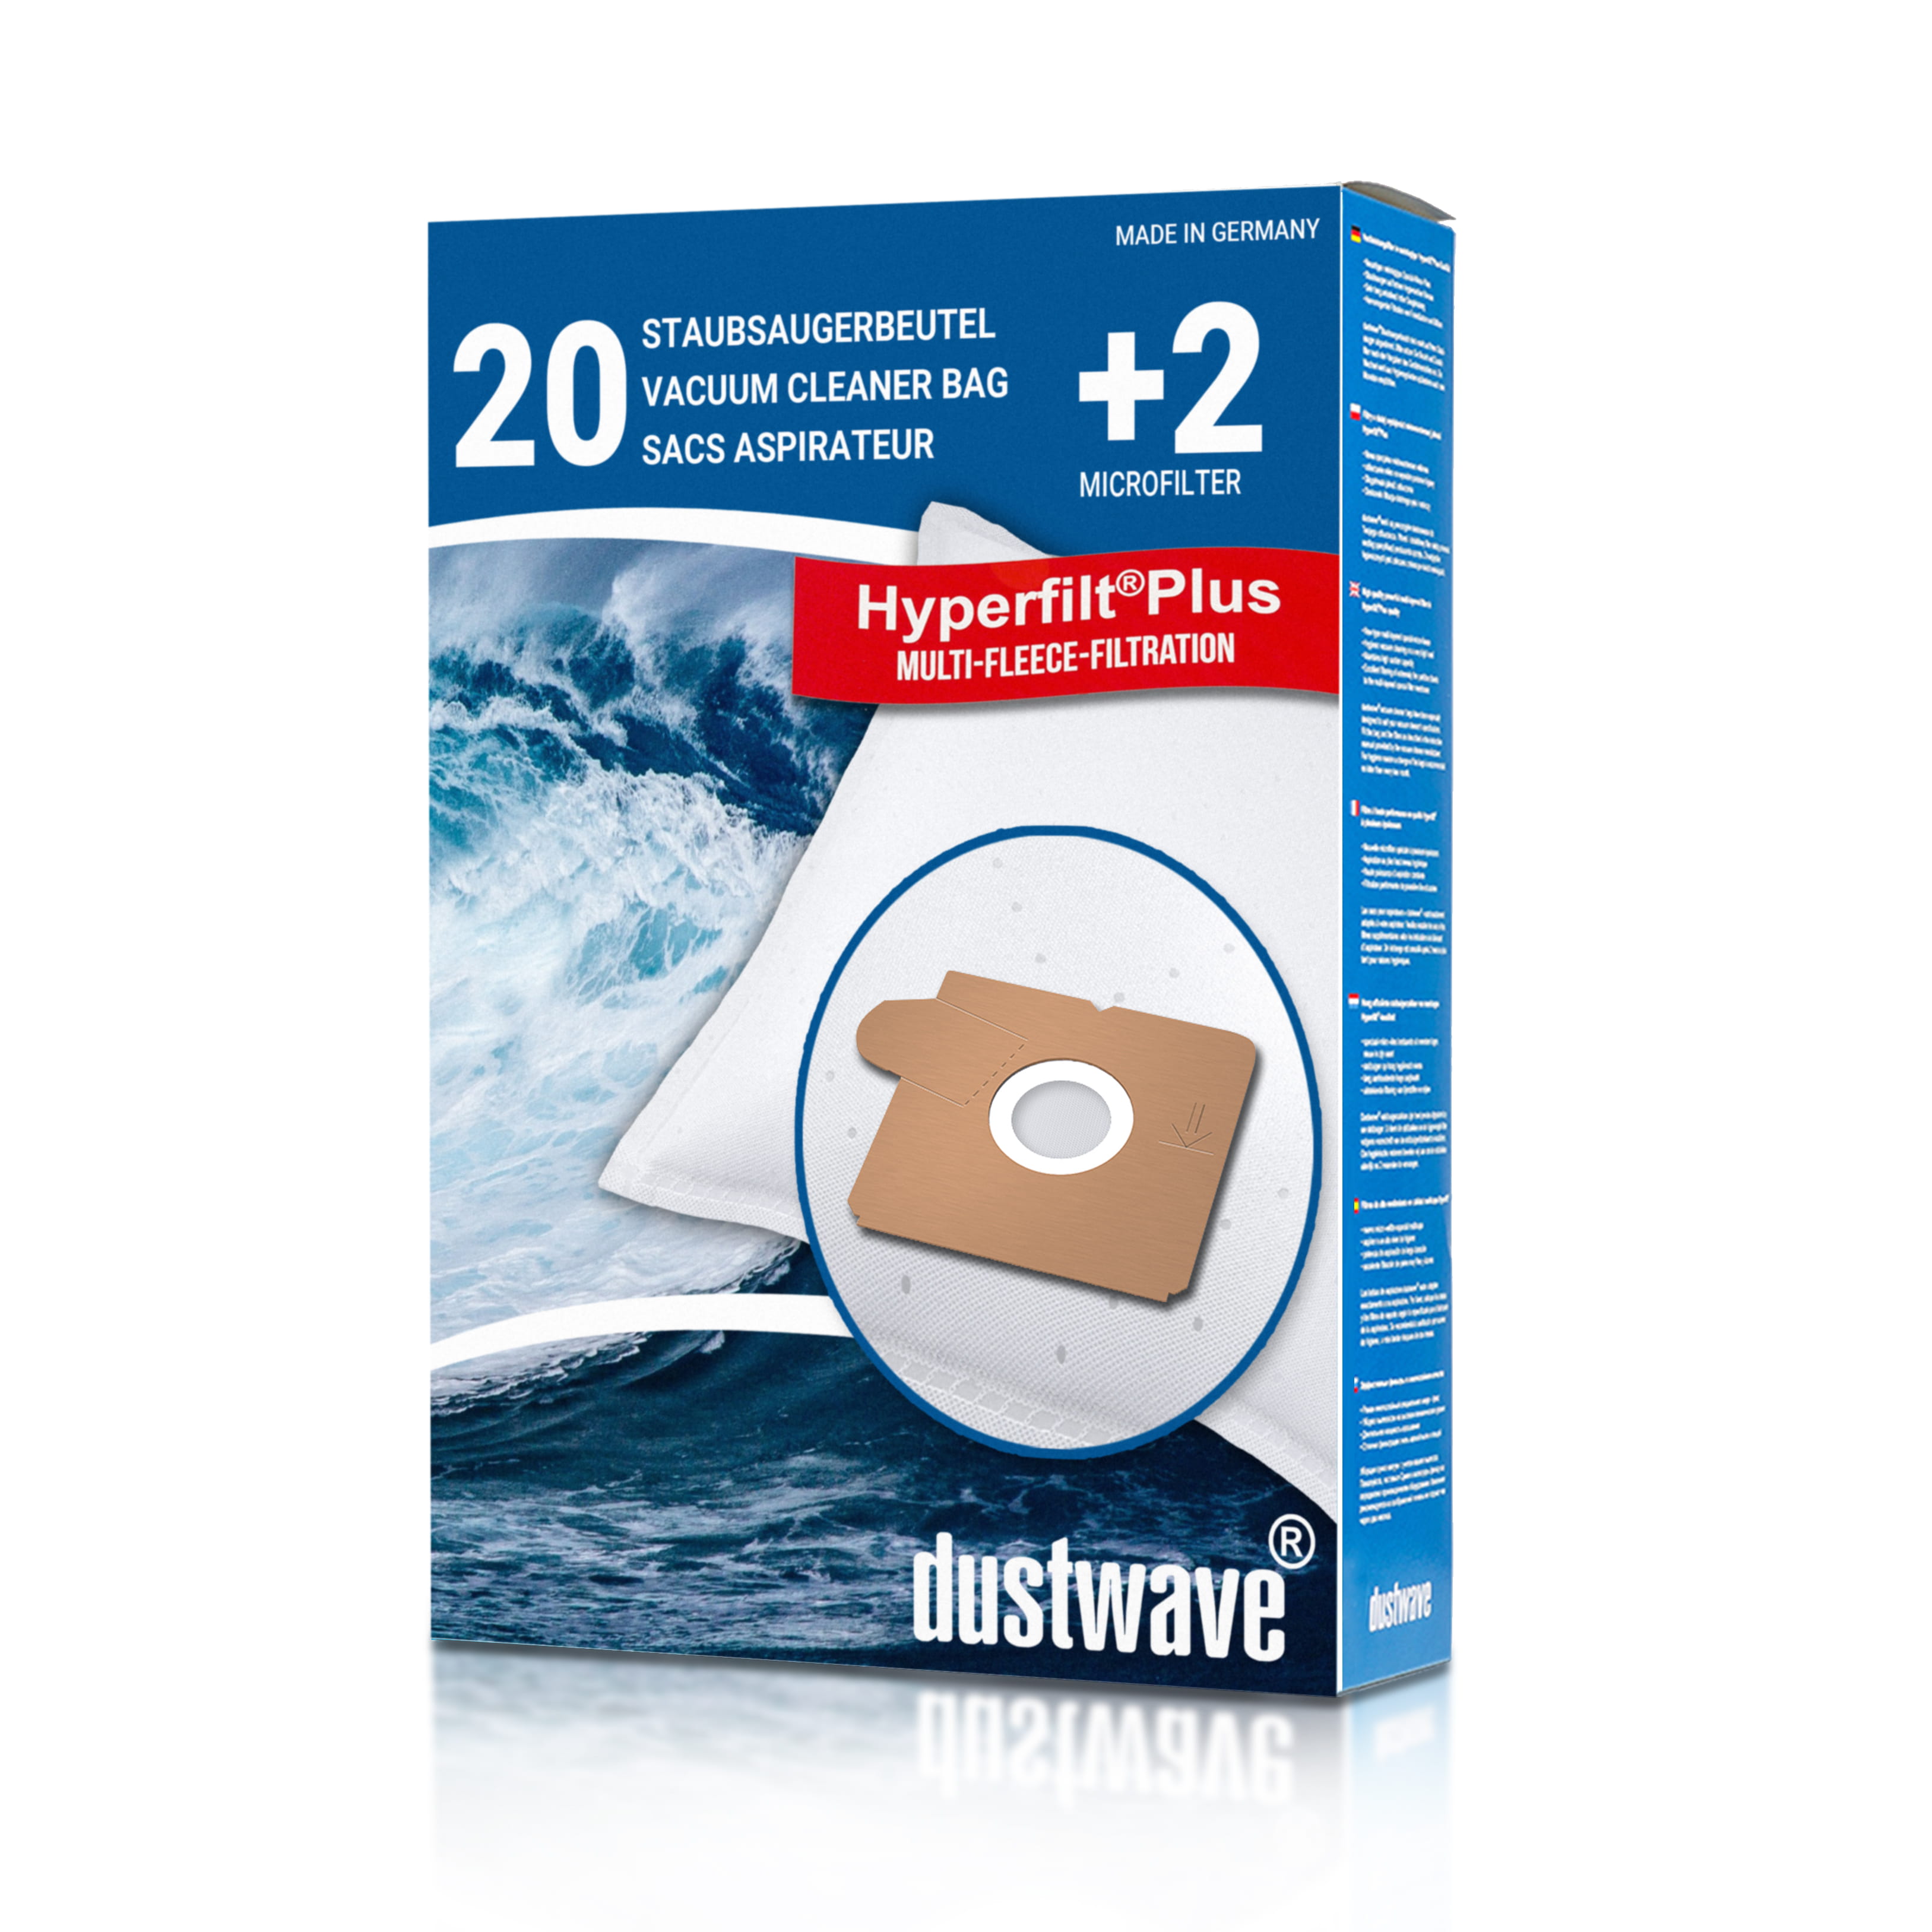 Dustwave® Premium 20 Staubsaugerbeutel für AEG GR5 / Größe 5 - hocheffizient mit Hygieneverschluss - Made in Germany